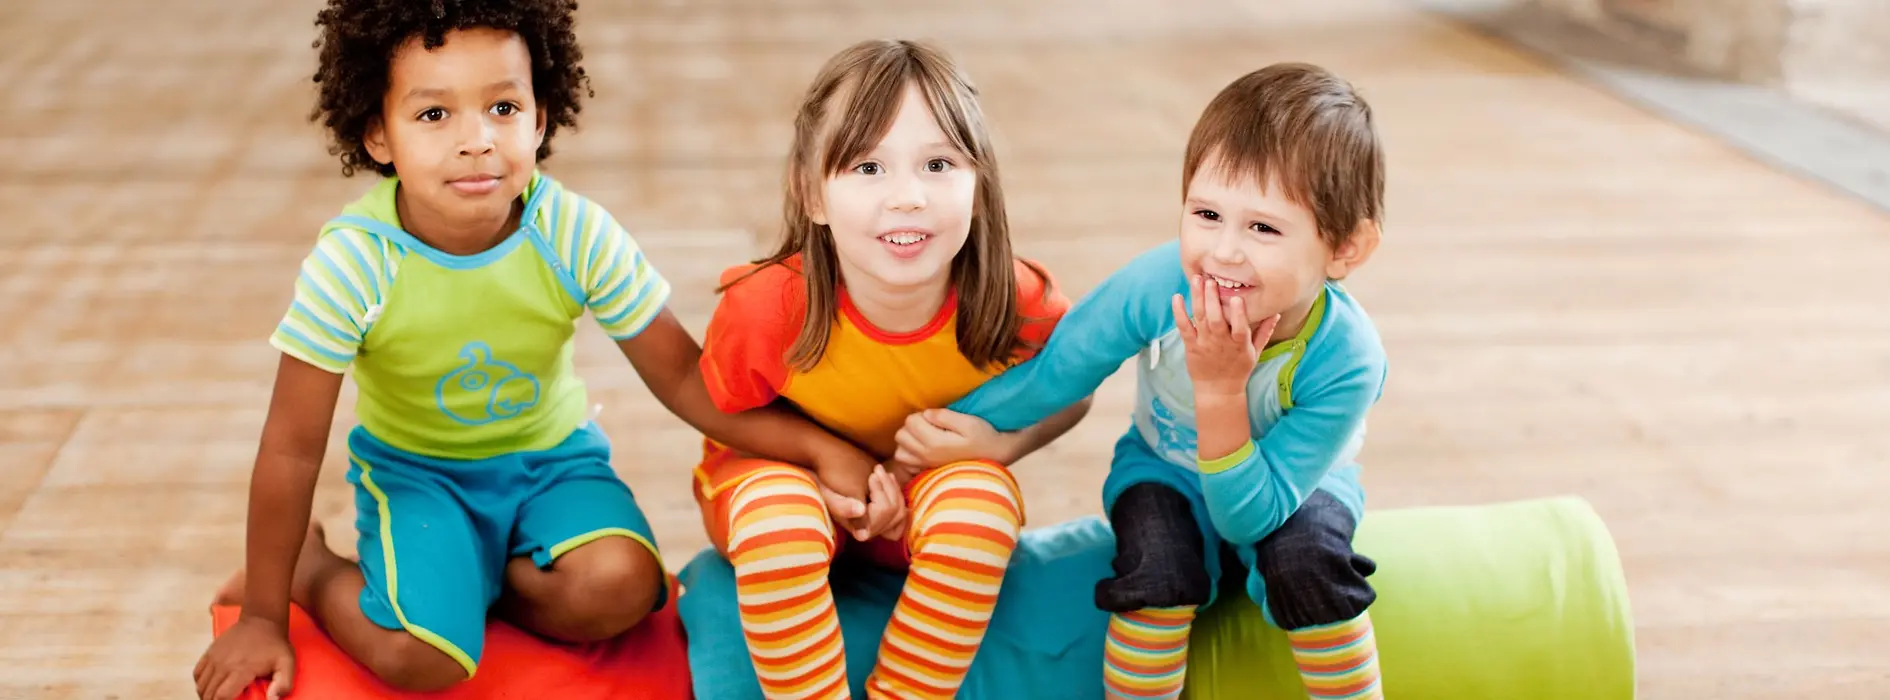 Tre bambini vestiti con colori allegri